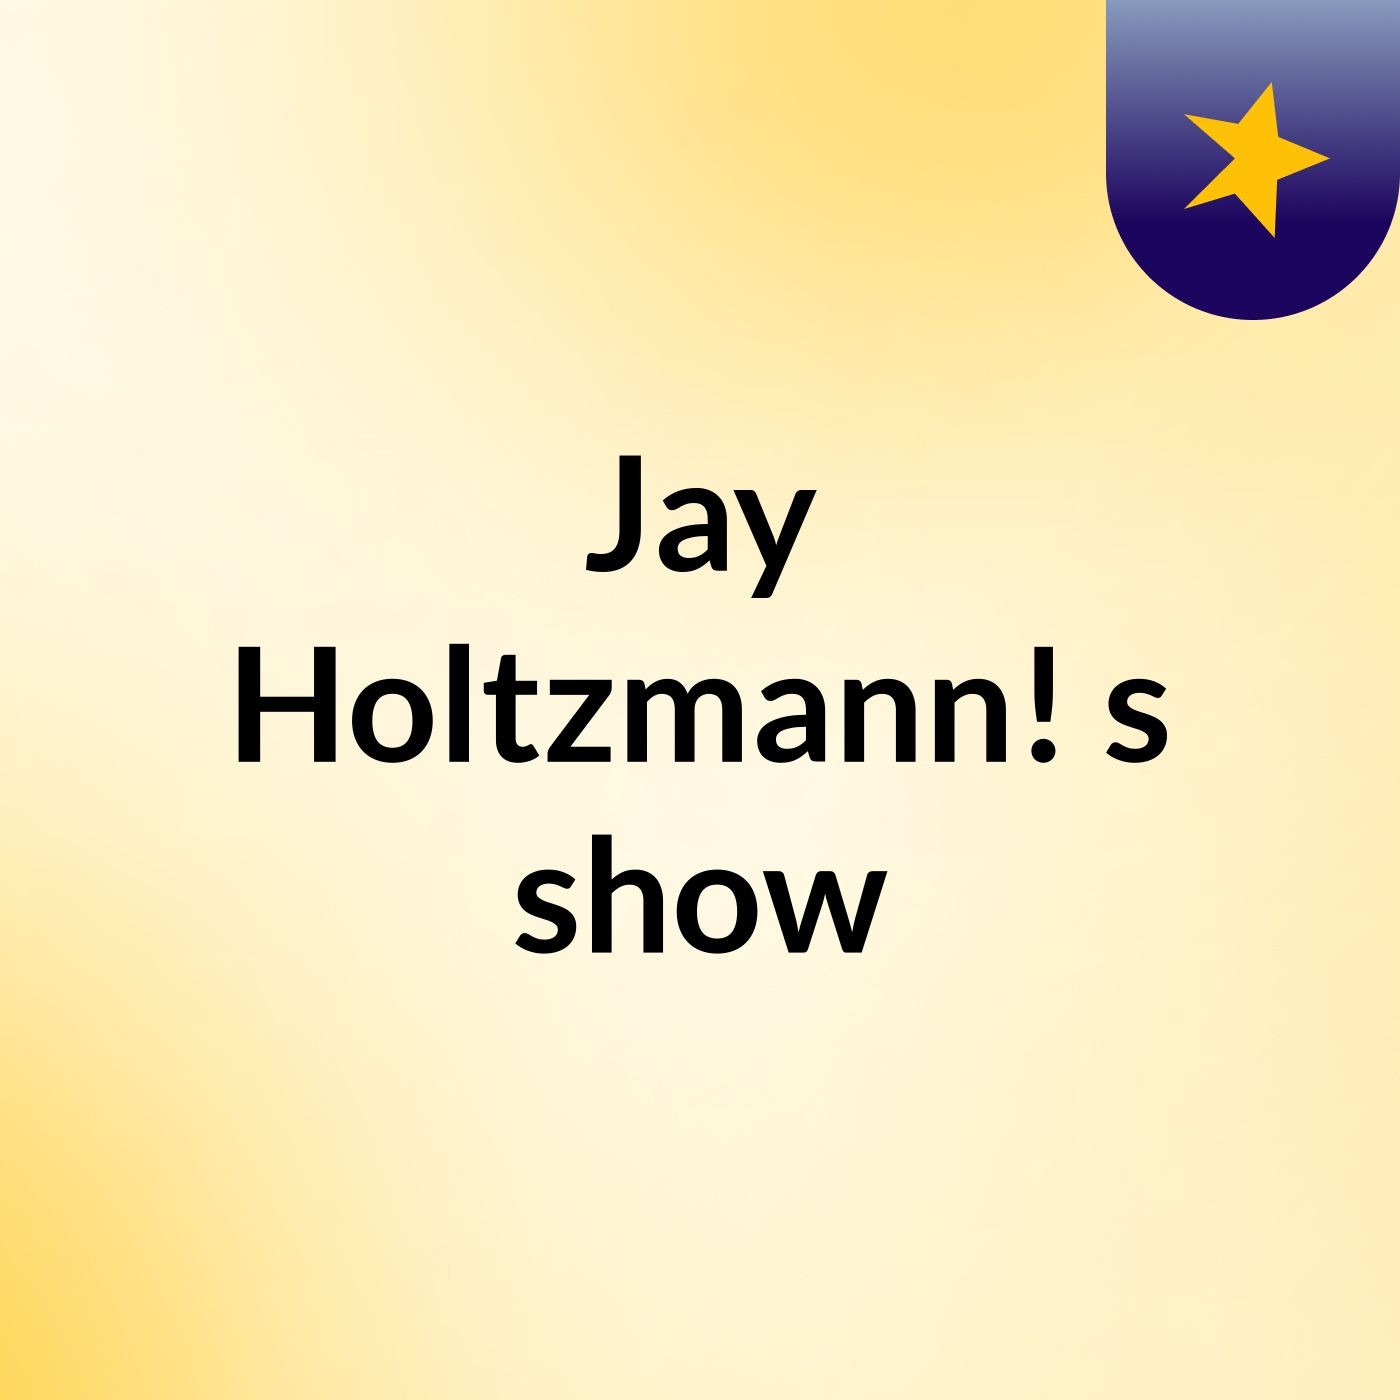 Jay Holtzmann!'s show